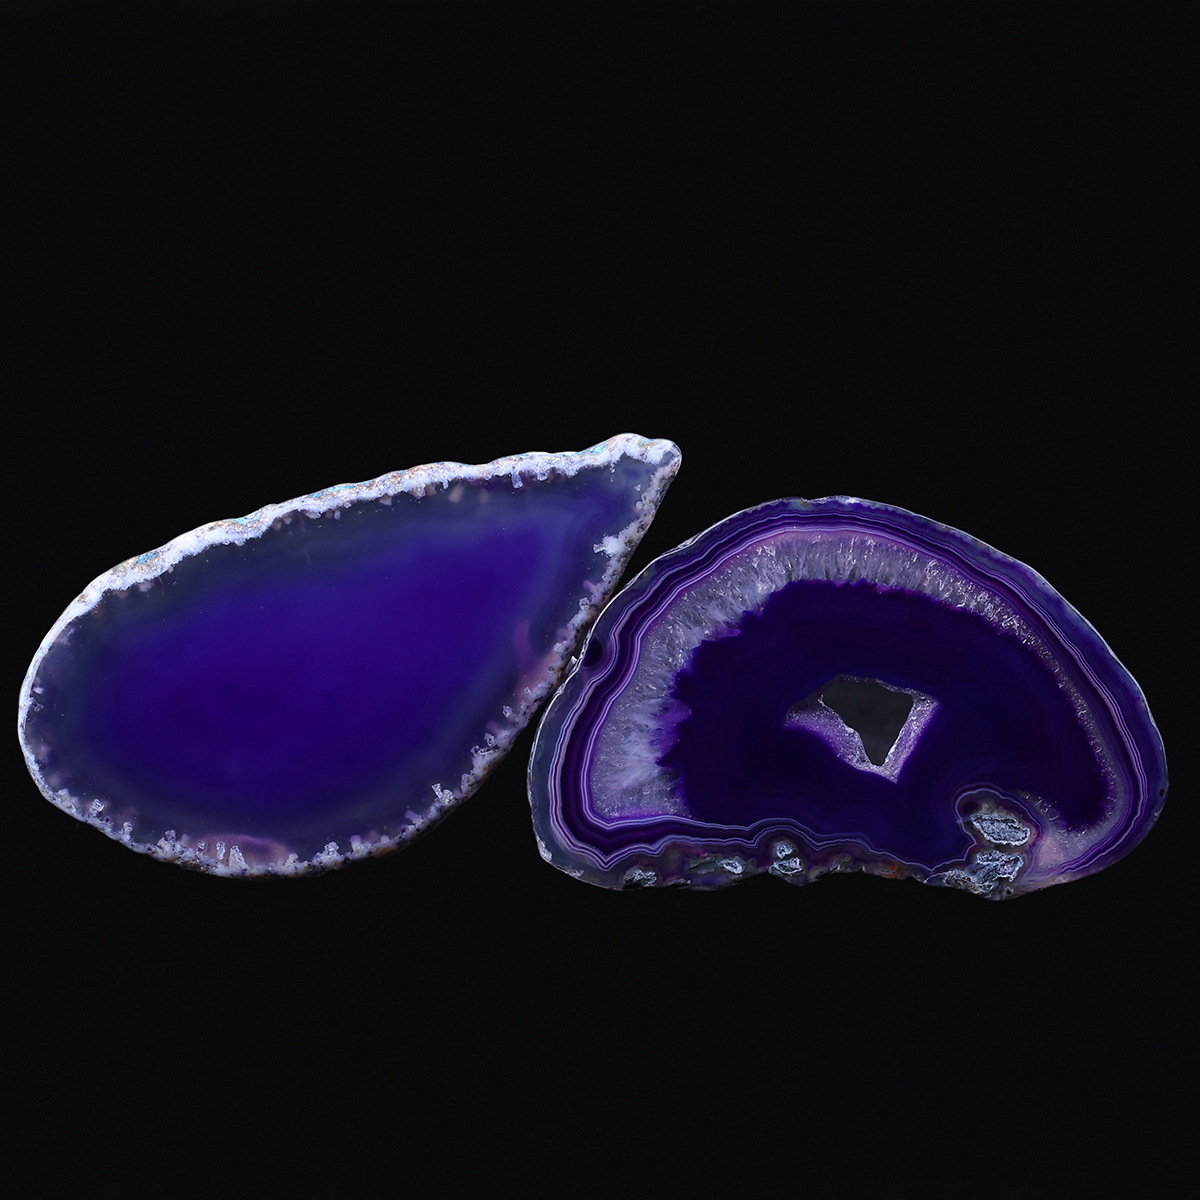  紫